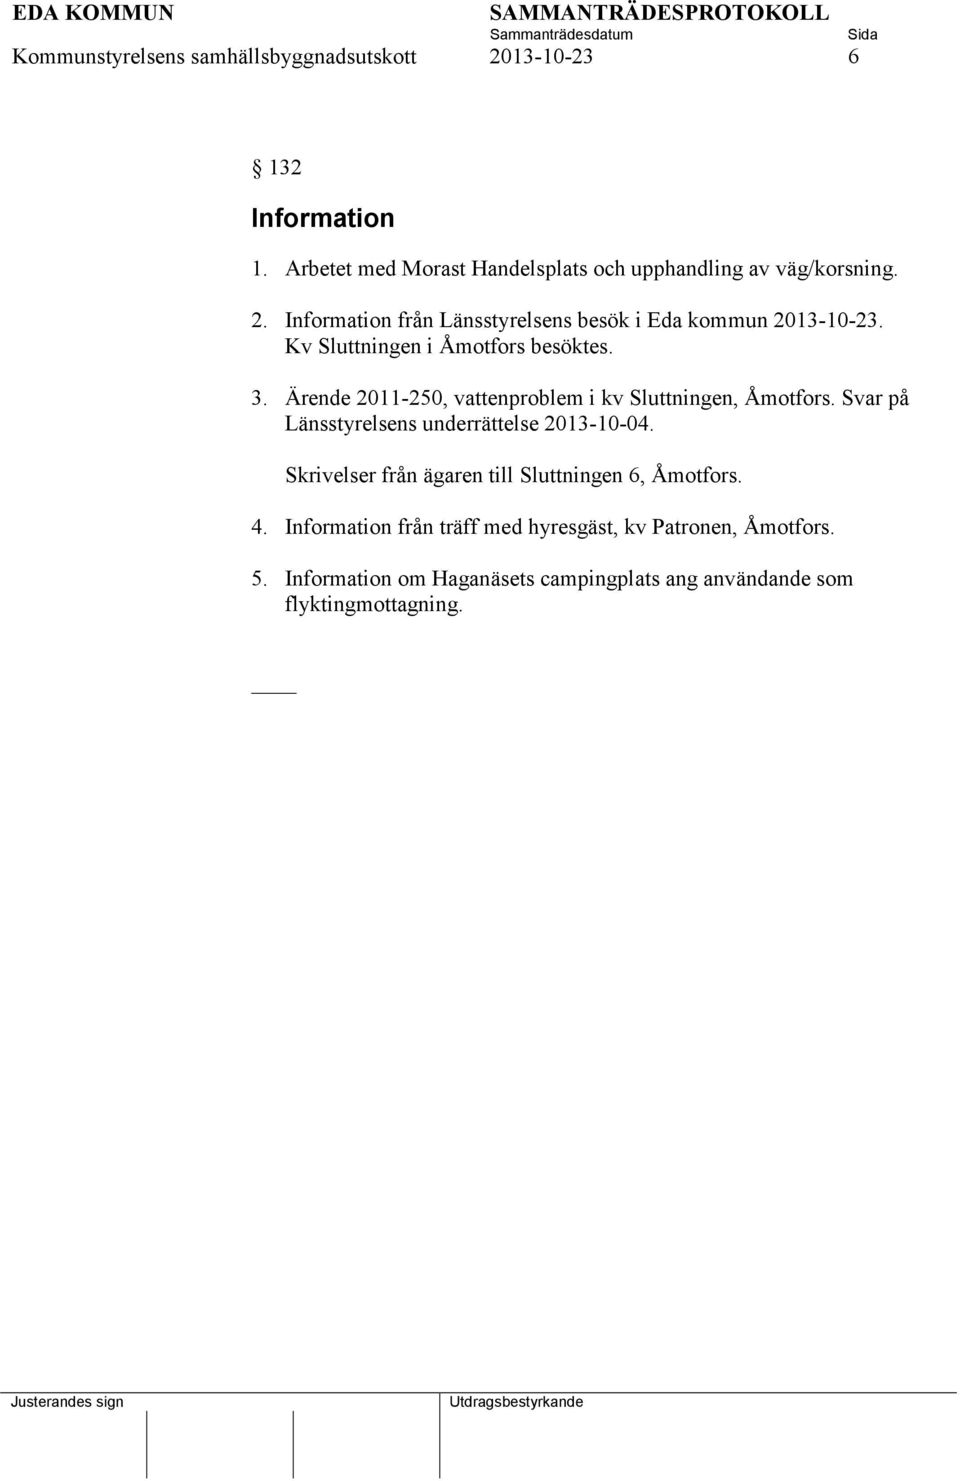 Ärende 2011-250, vattenproblem i kv Sluttningen, Åmotfors. Svar på Länsstyrelsens underrättelse 2013-10-04.